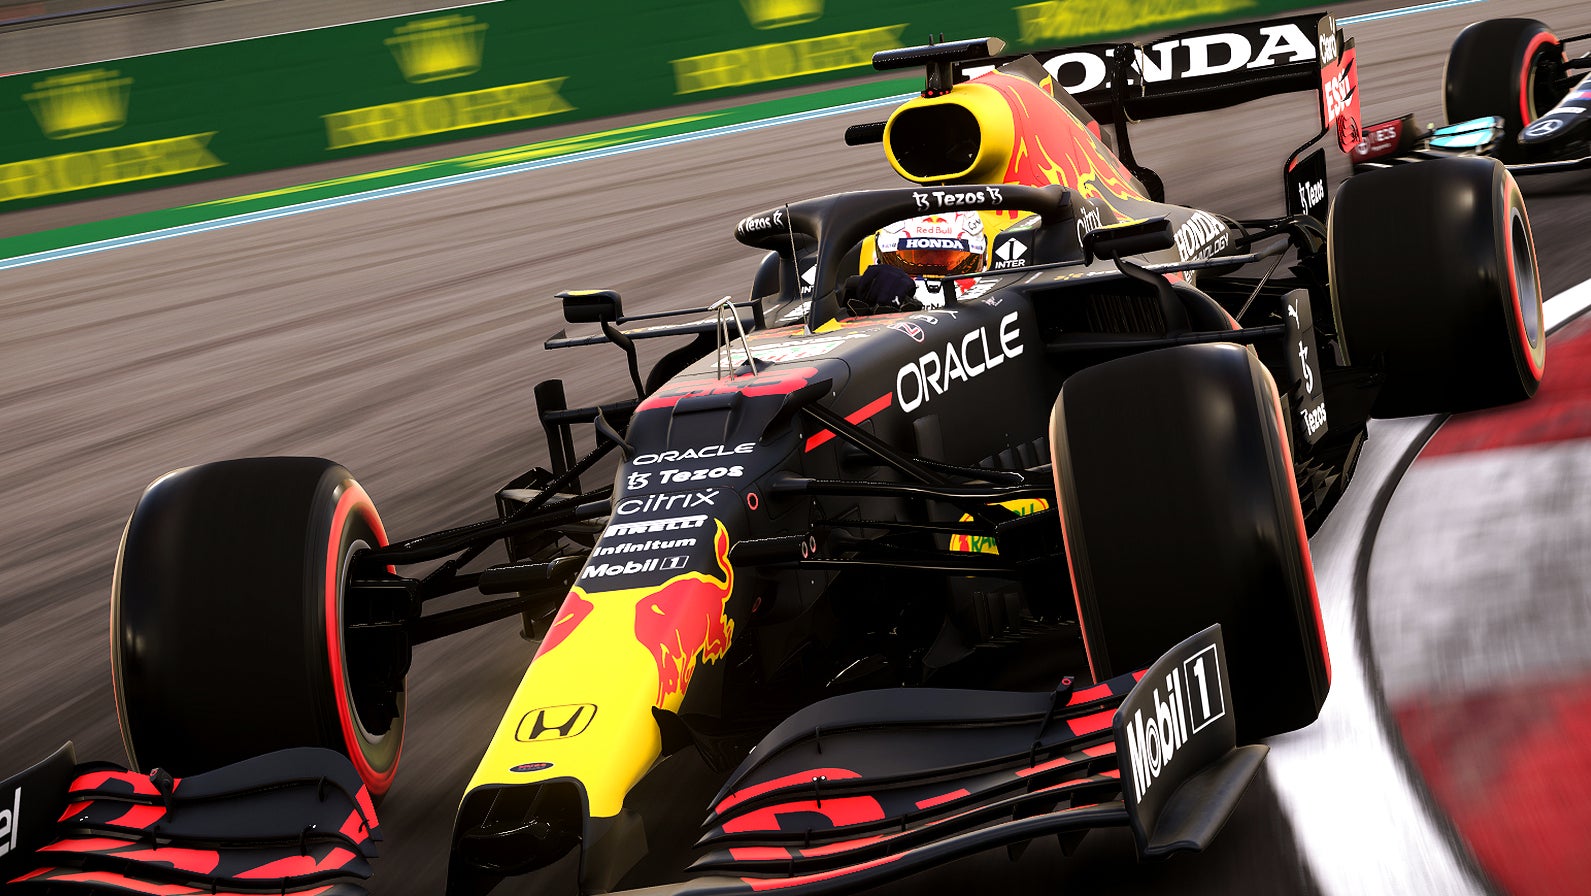 Bilder zu Max Verstappen wird Formel 1 Weltmeister, sagt Codemasters' Prognose mit F1 2021